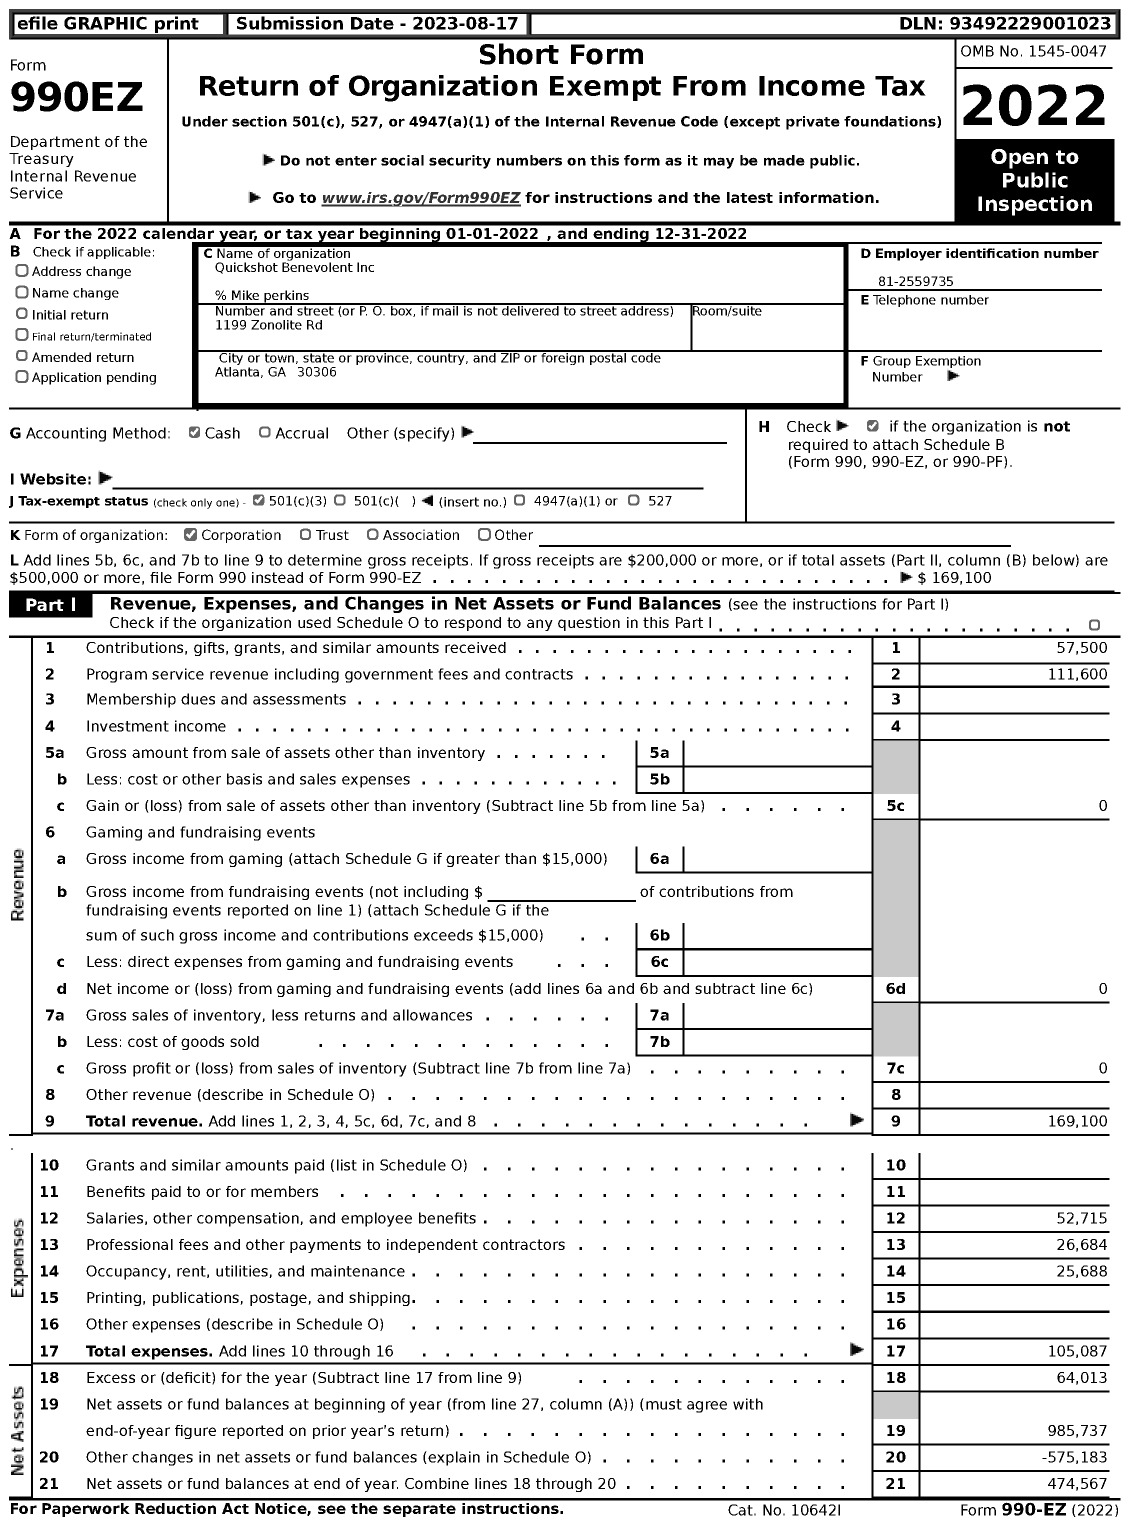 Image of first page of 2022 Form 990EZ for Quickshot Benevolent